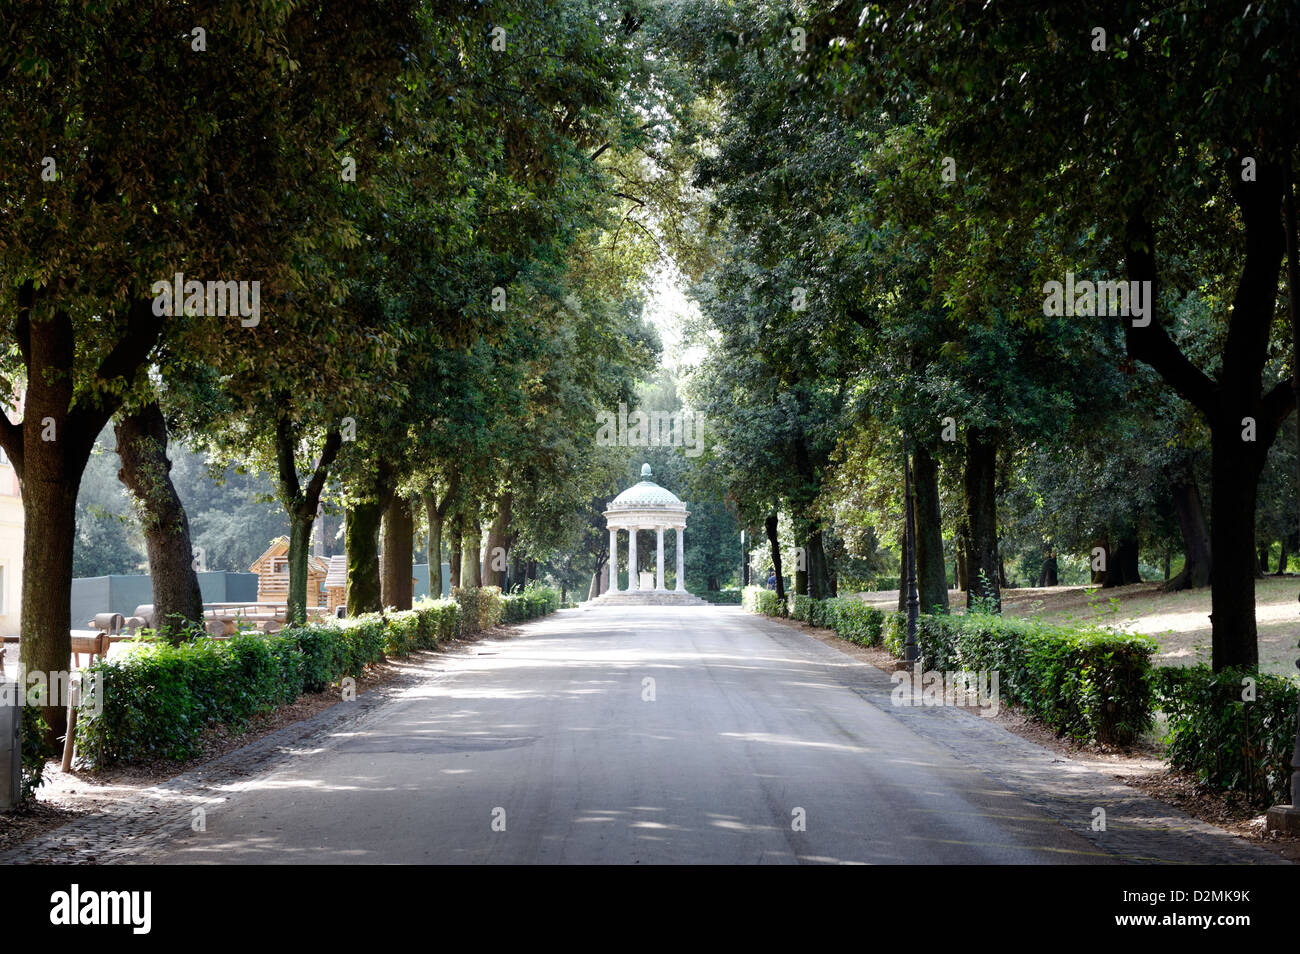 Roma. L'Italia. Viale alberato sentiero conduce alla circolare tempio dedicato a Diana (Tempio di Diana). I giardini di Villa Borghese. Foto Stock